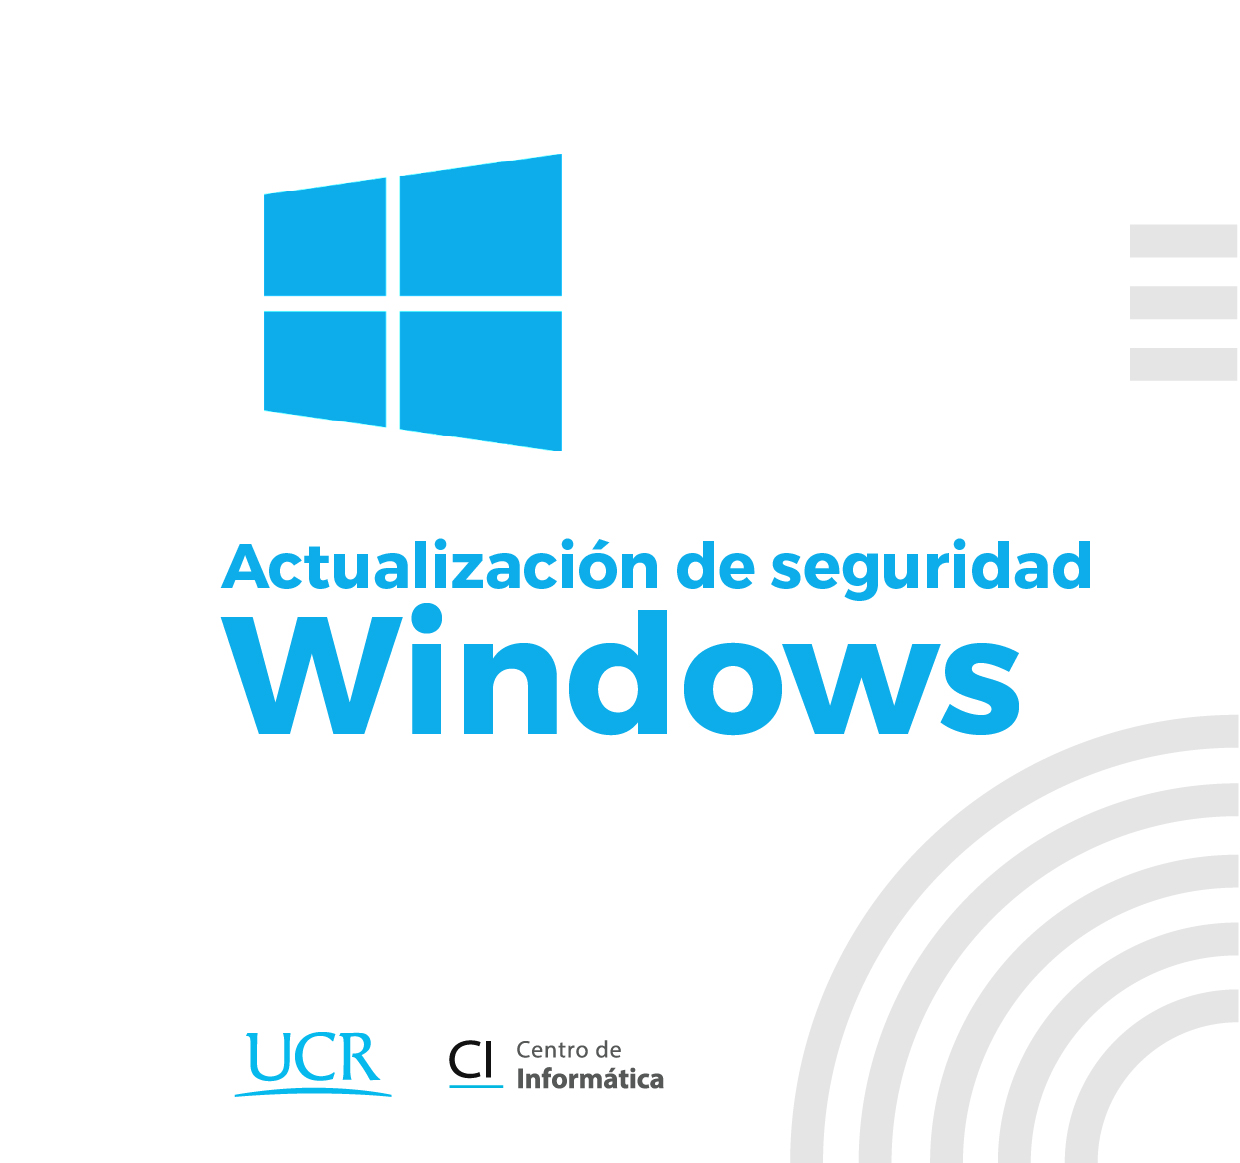 Imagen del logo de la ventana de windows con el texto actualización de seguridad windows